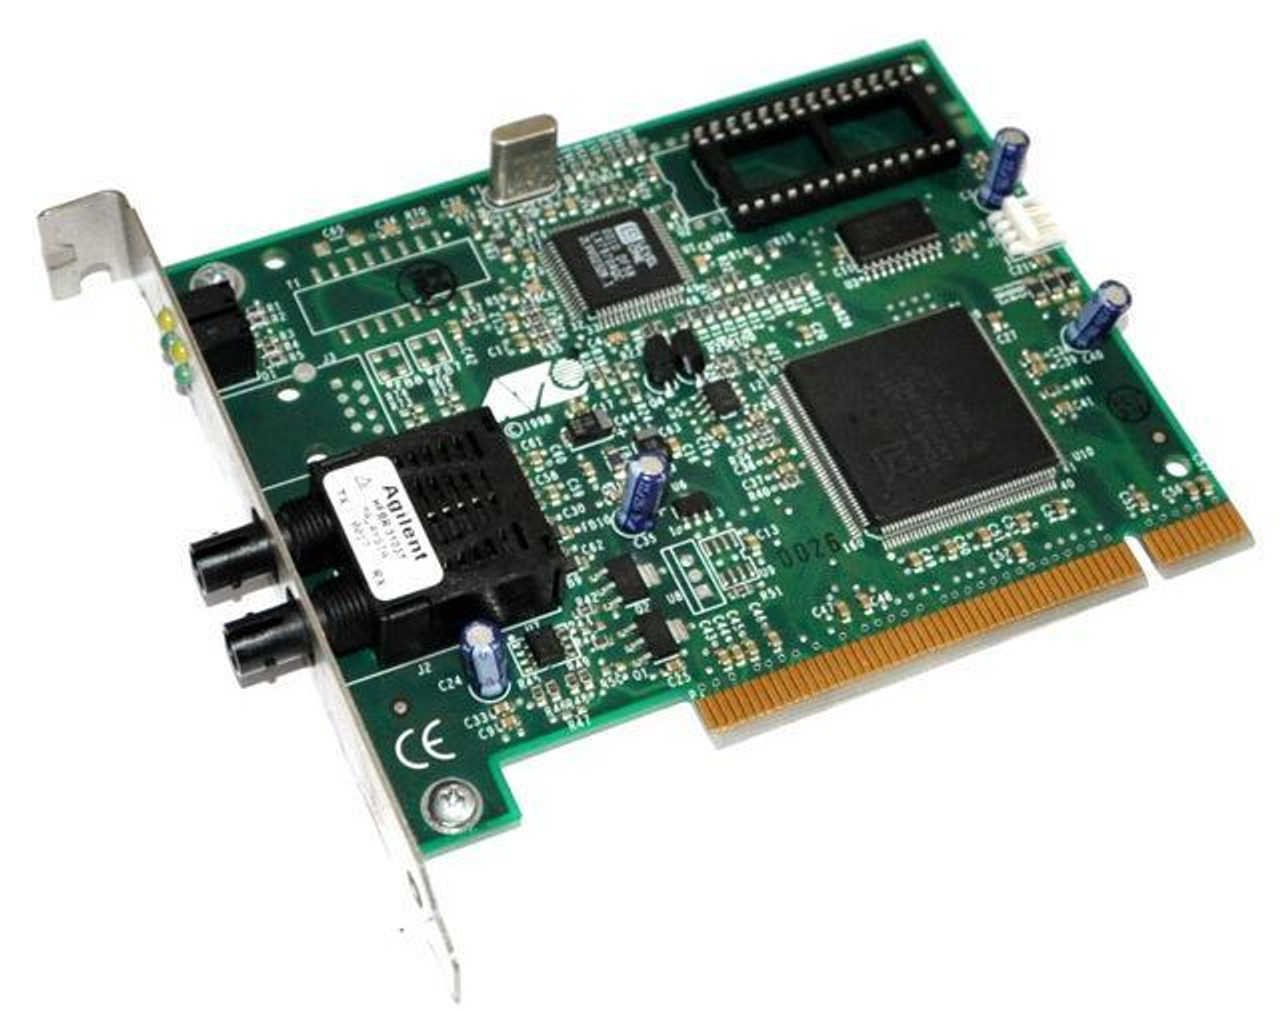 AT-2700TX-020 Allied Telesis AT-2700TX Network Adapter PCI 1 x RJ-45 10/100Base-TX